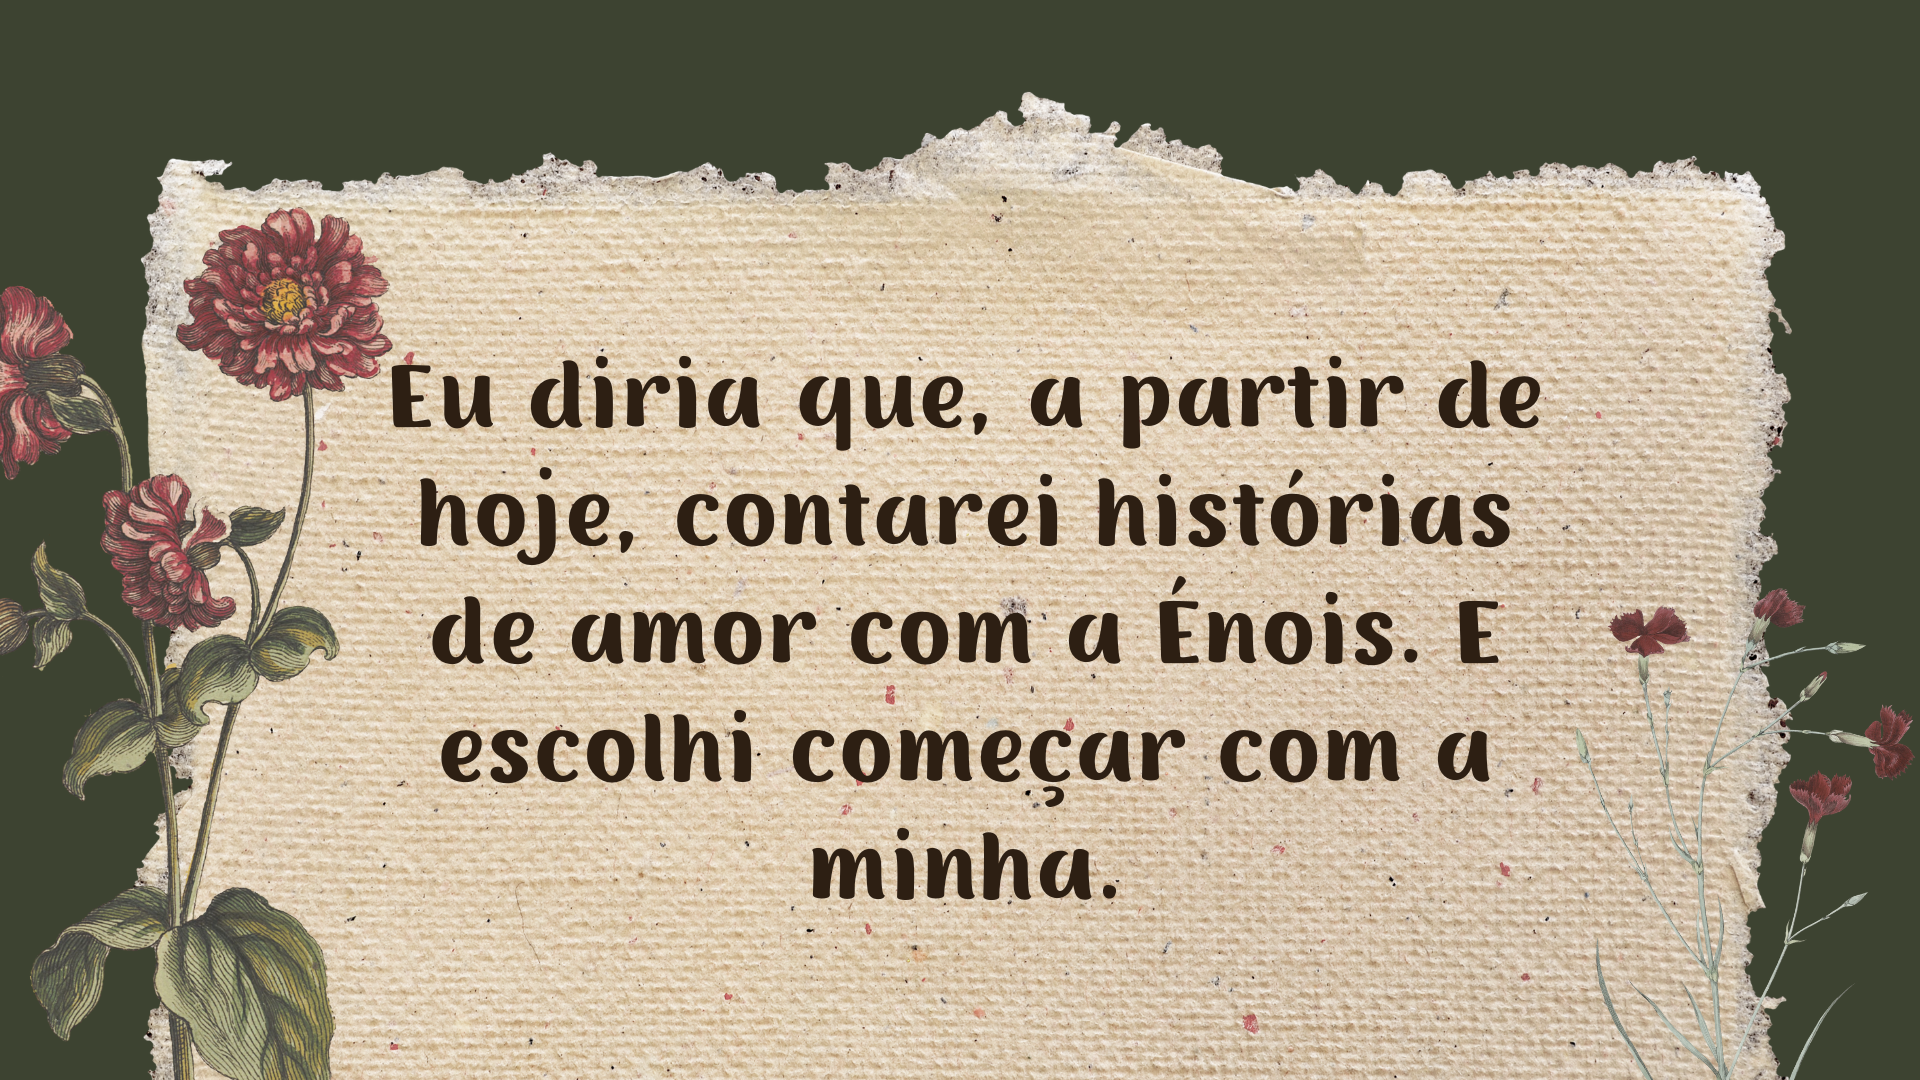 Eu tenho uma história de amor com a Énois - News Rondônia